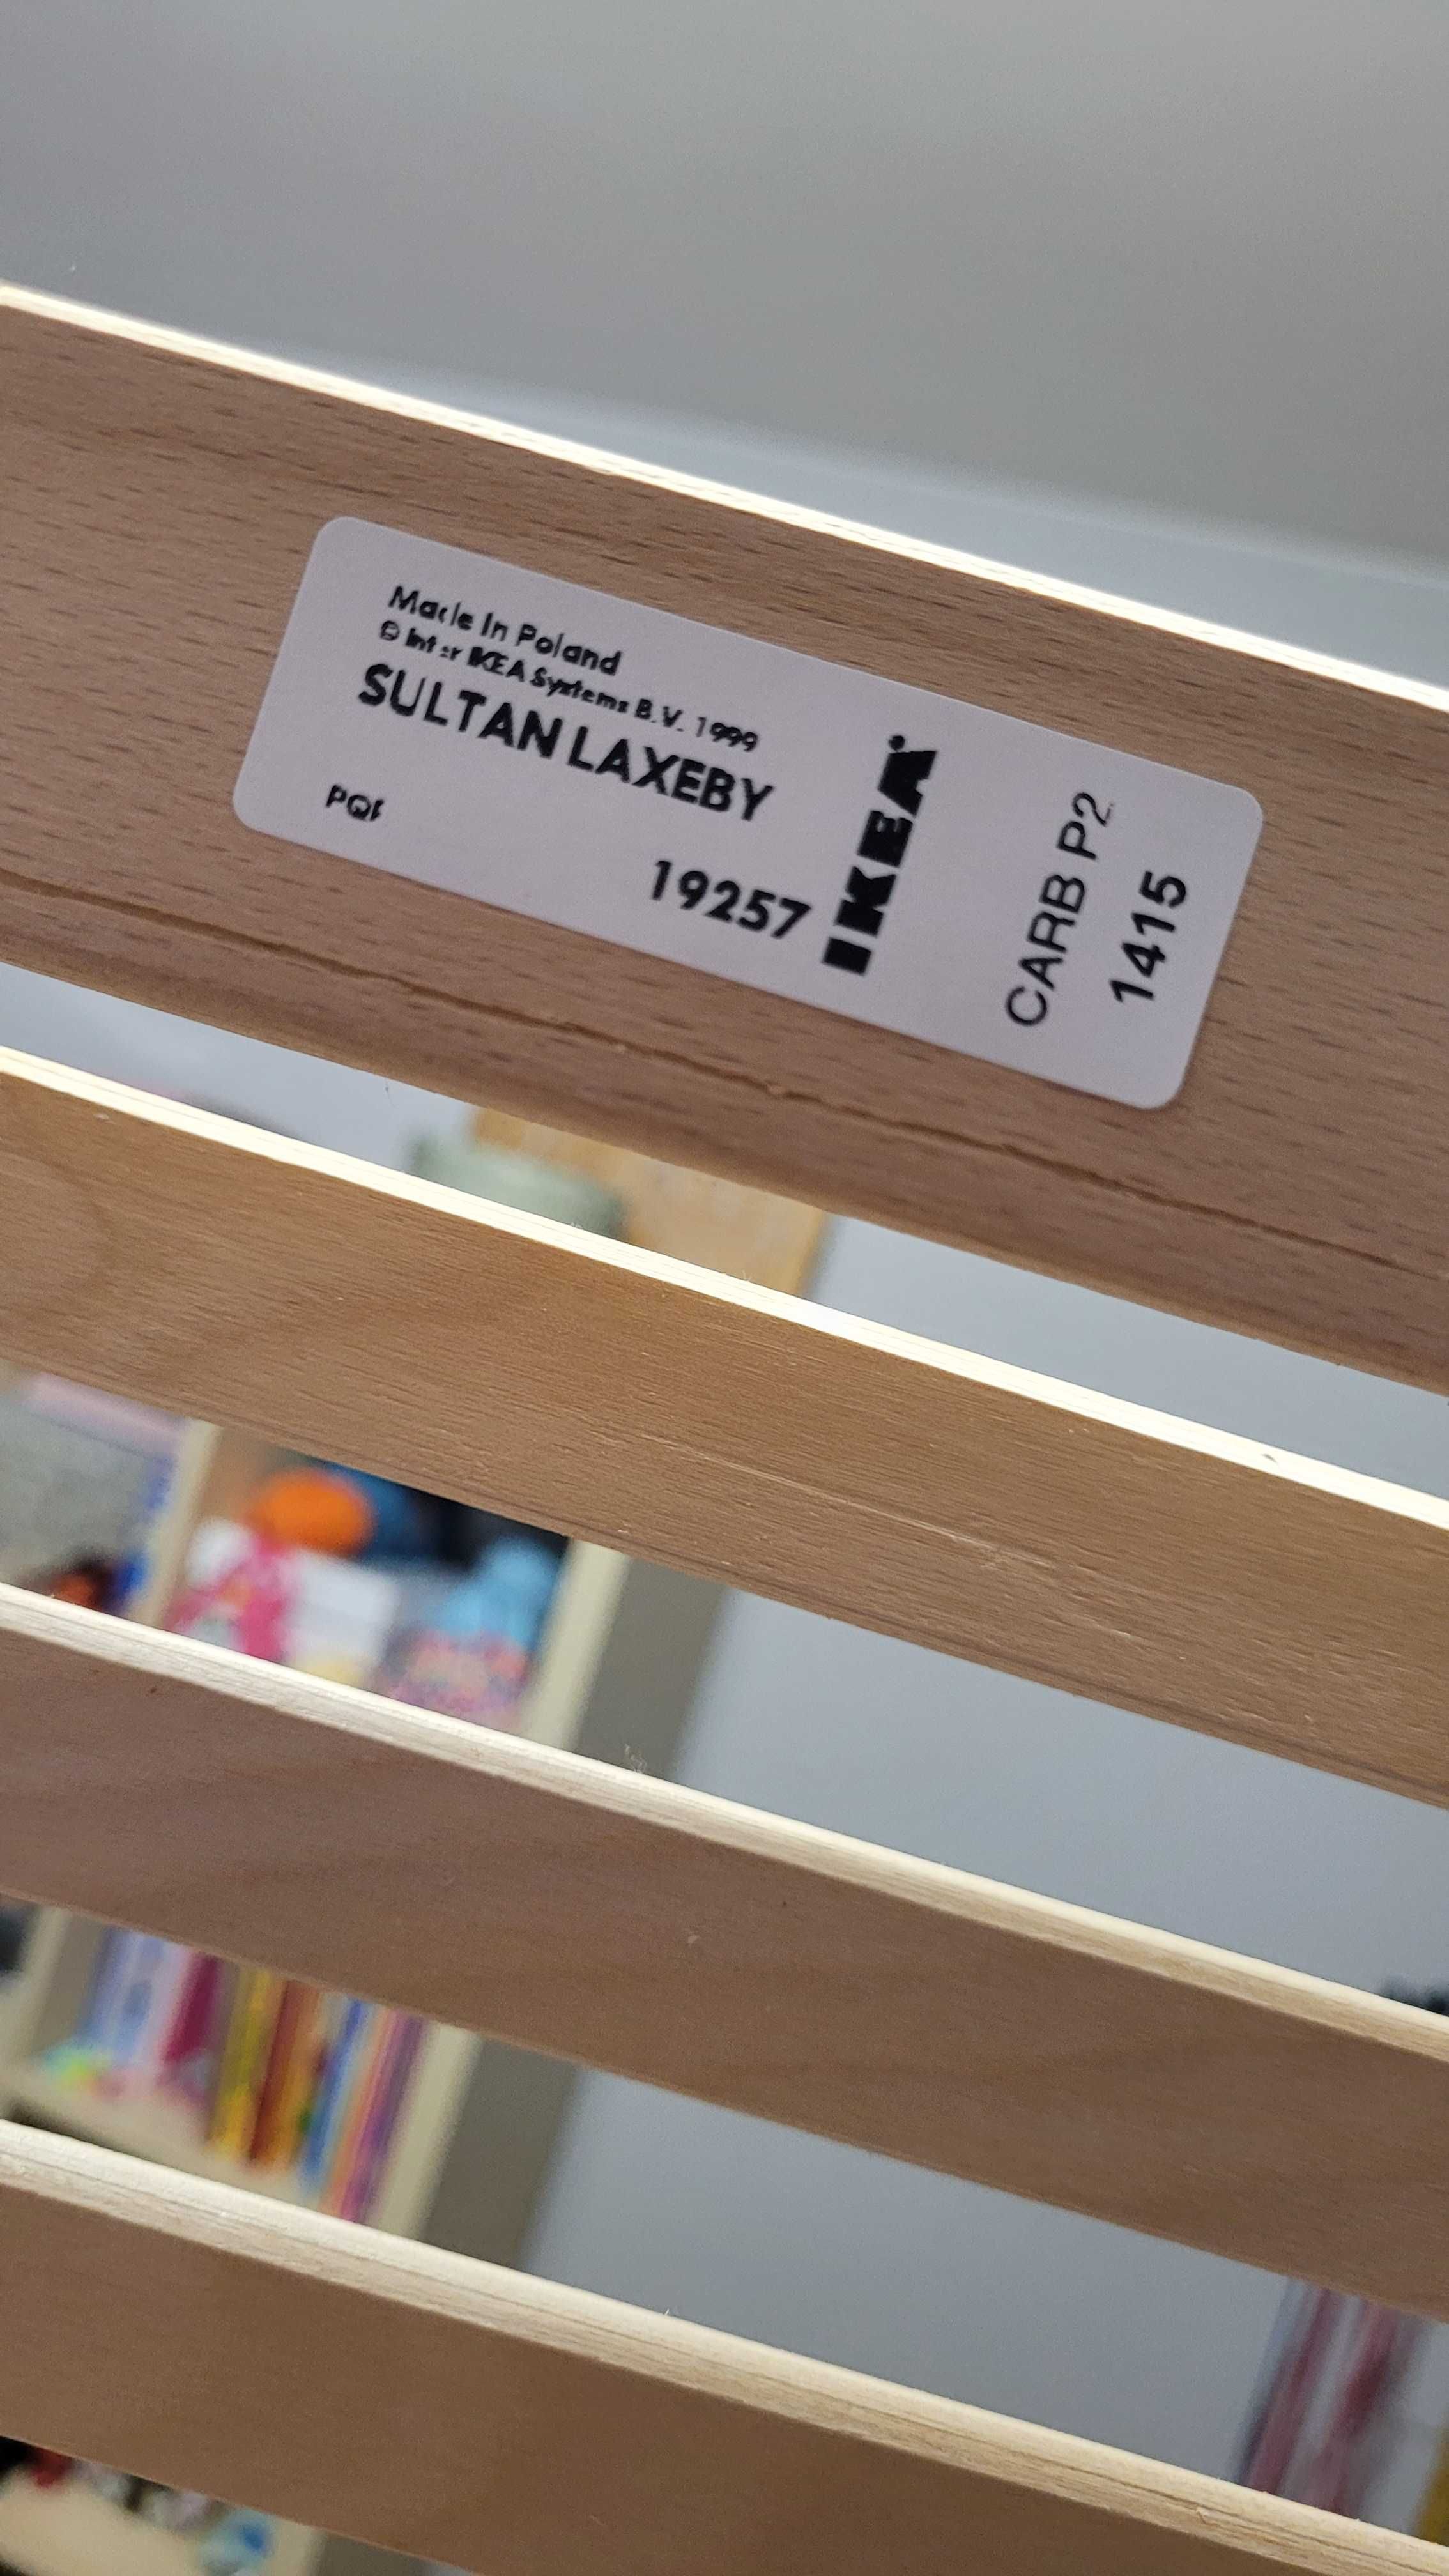 Lozko + stelaż IKEA Sultan + szuflada. 90x200. Stan idealny.